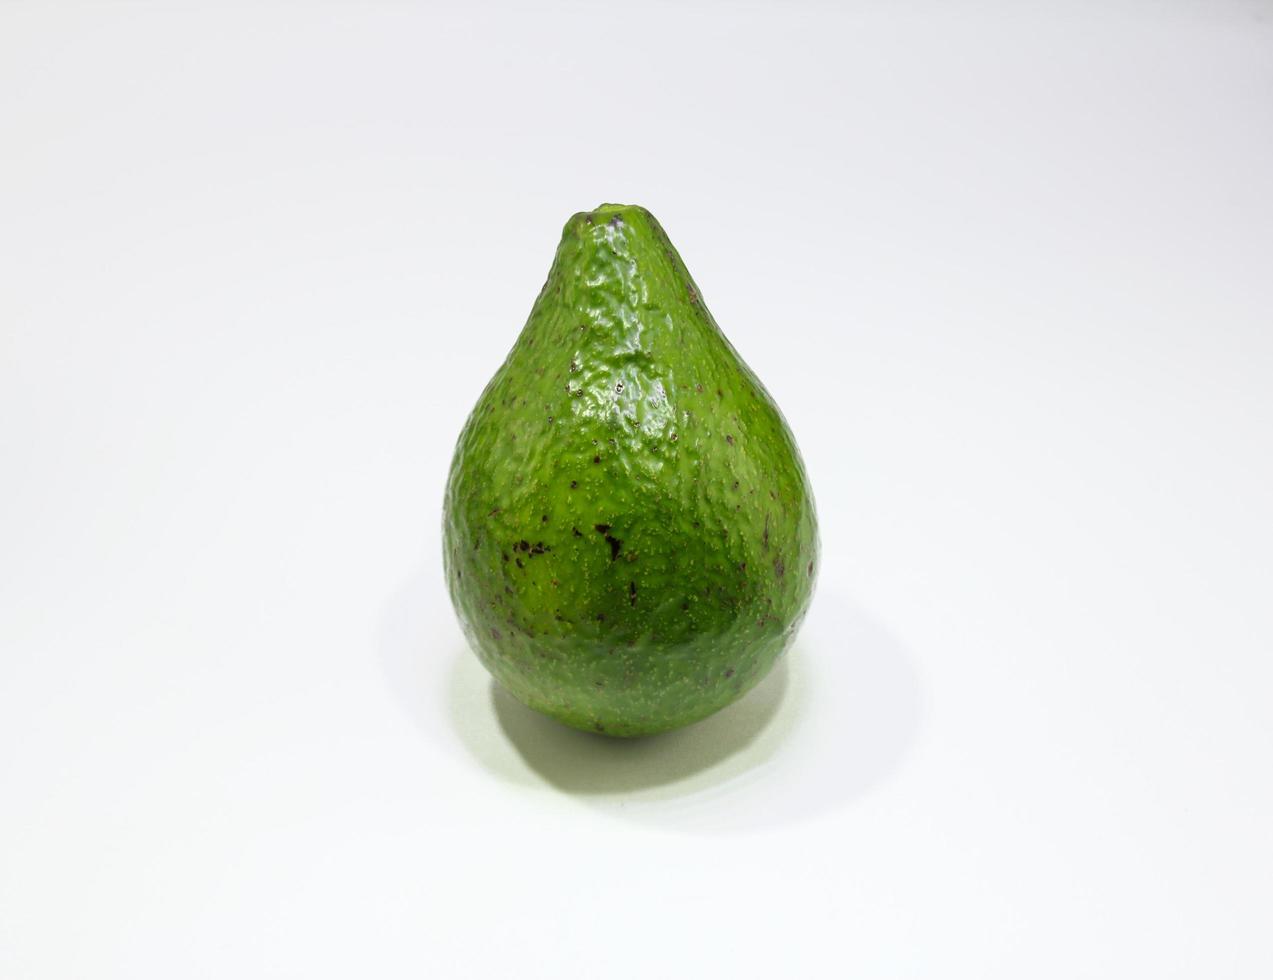 Group Of Green Fresh Avocado fruits, Healty Natural Food photo